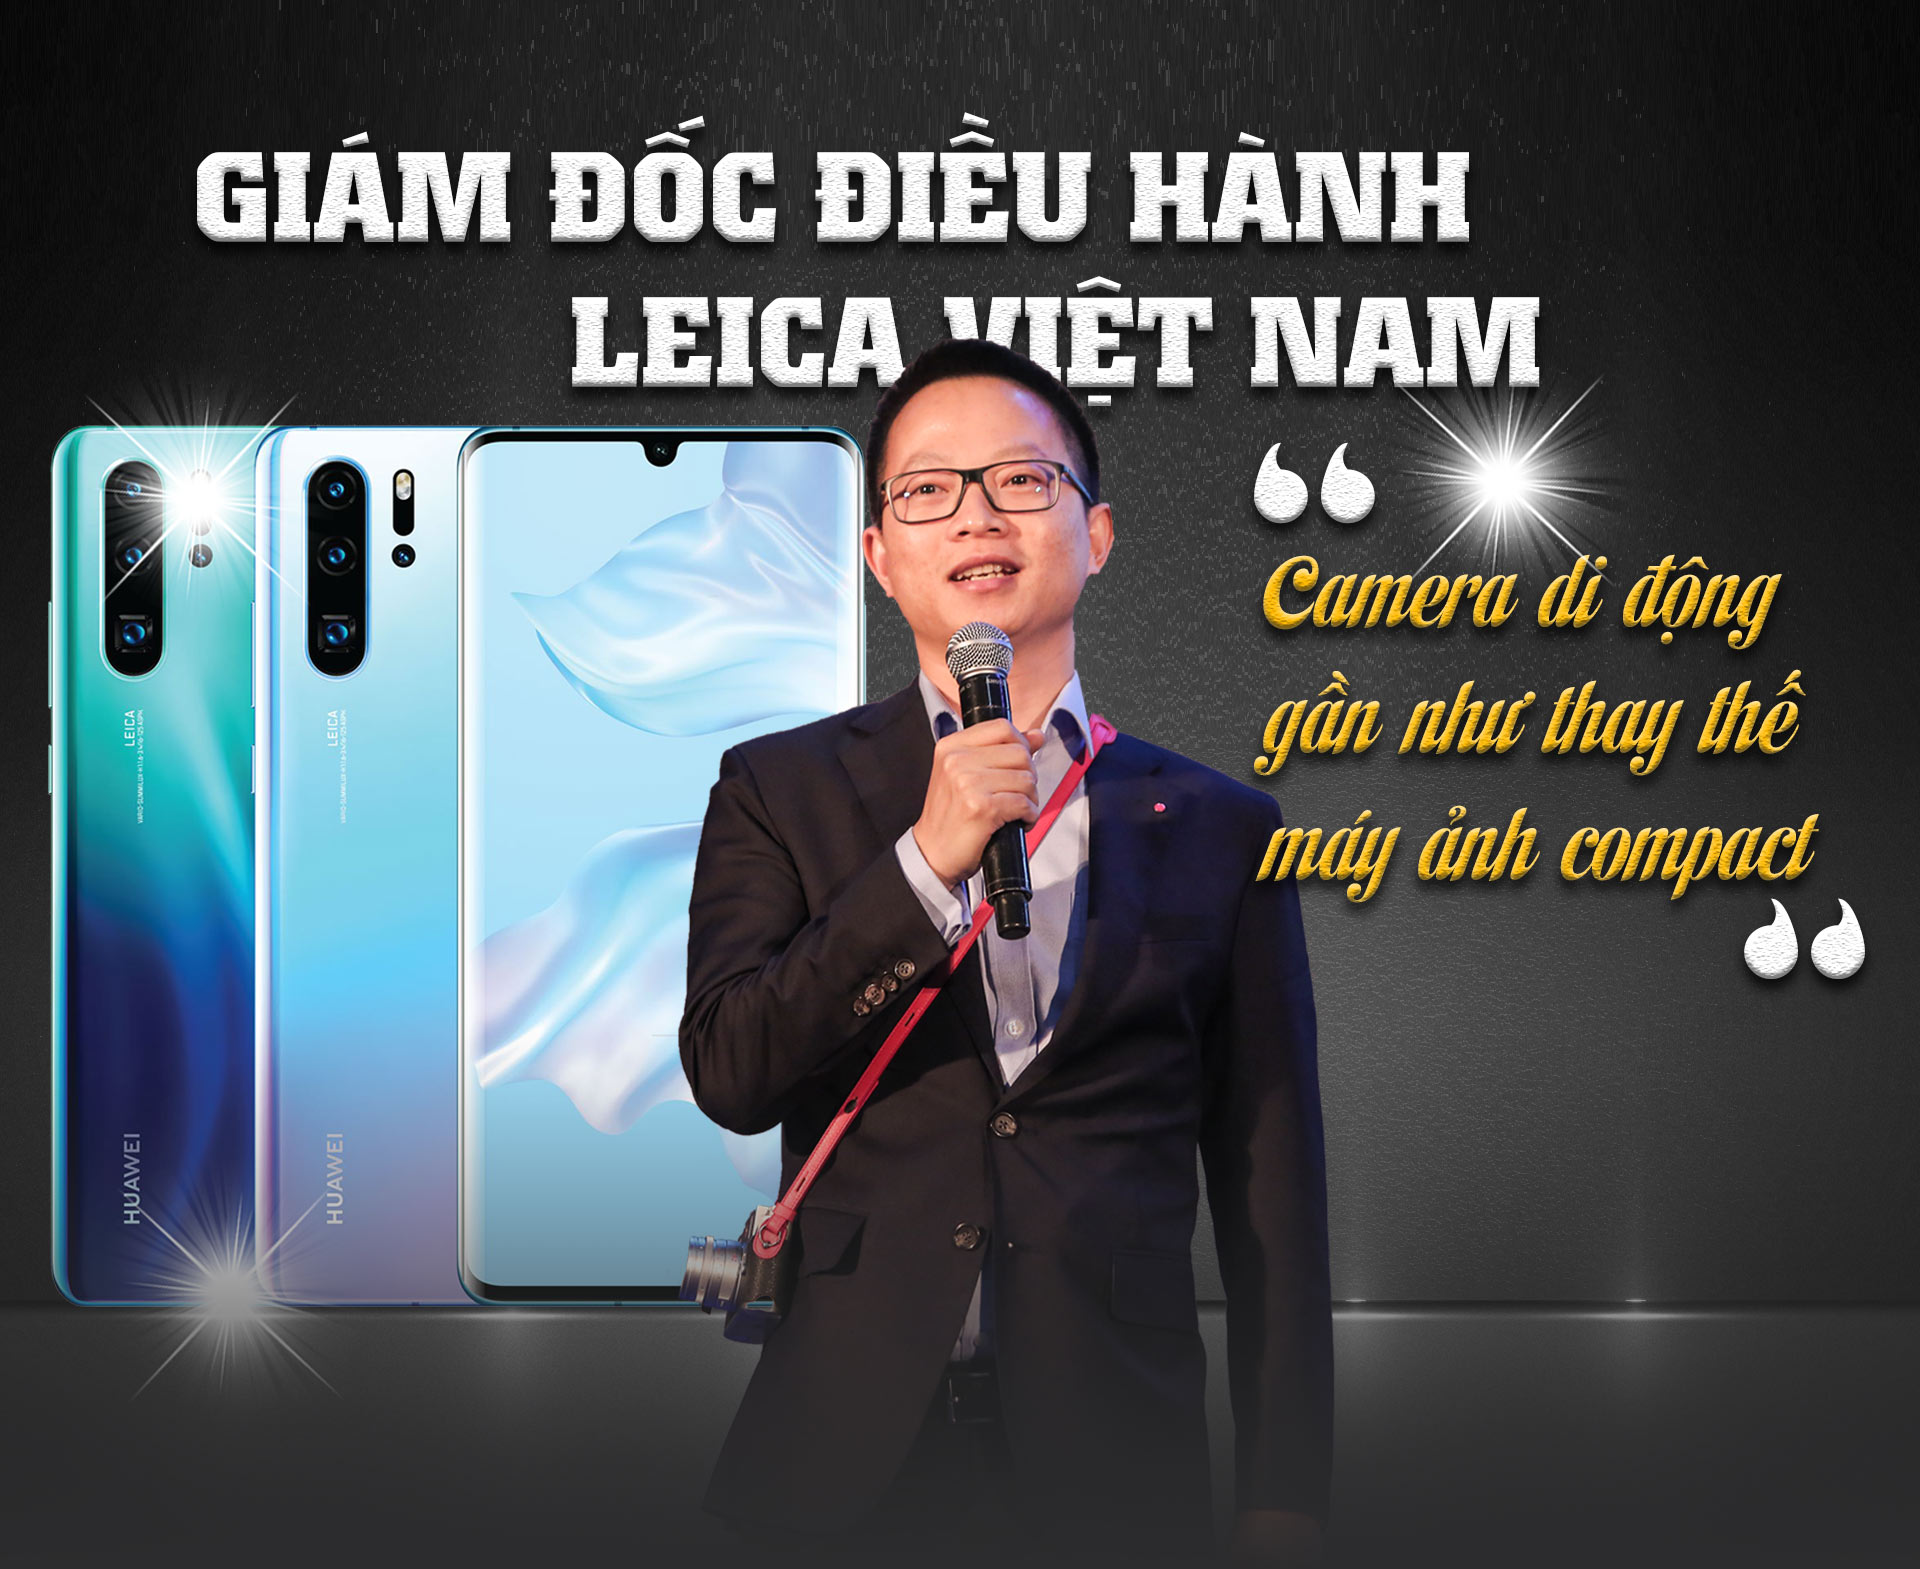 Giám đốc Điều hành Leica Việt Nam: Camera di động gần như thay thế máy ảnh compact - 1